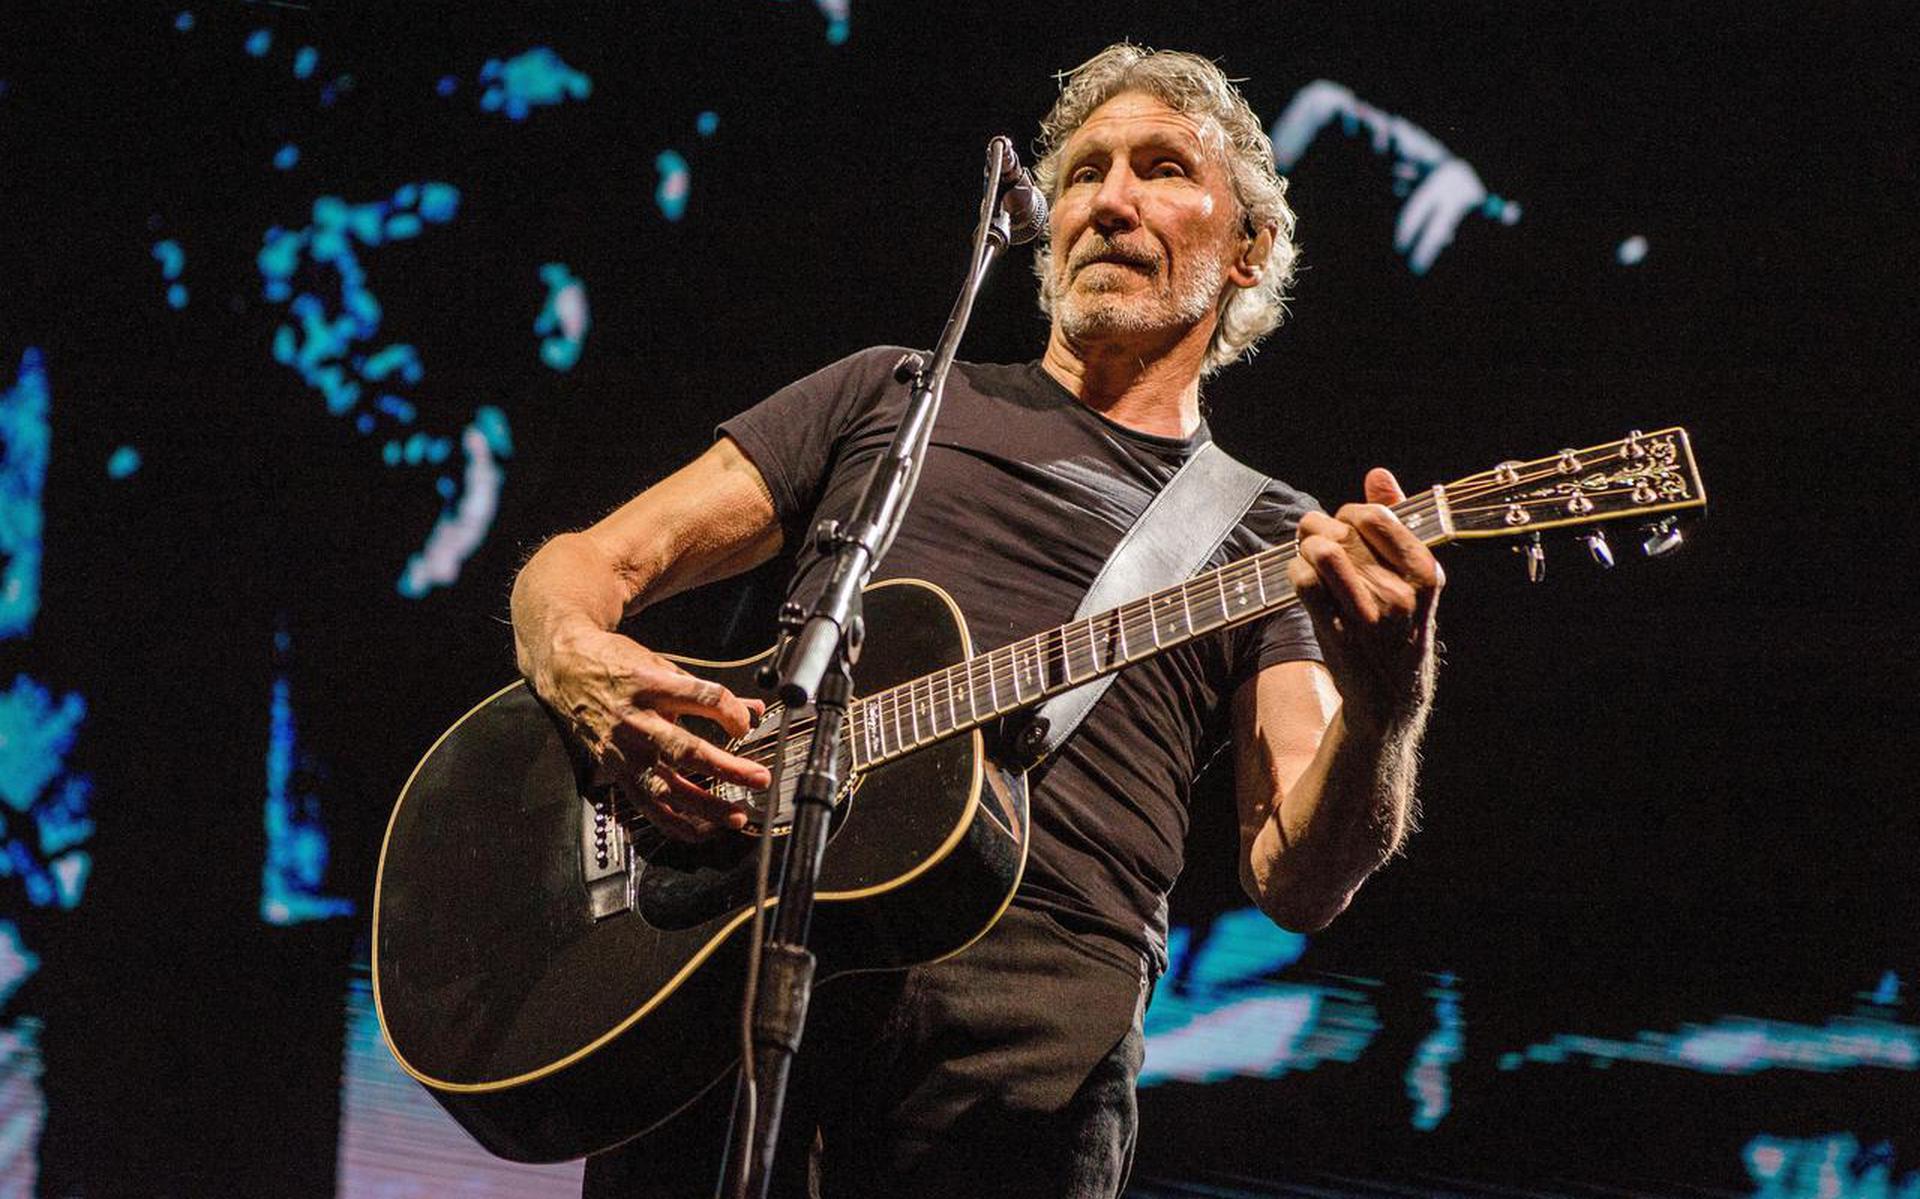 Zanger en bassist Roger Waters verliet Pink Floyd in 1985 en toert momenteel door Europa met zijn show This Is Not A Drill.